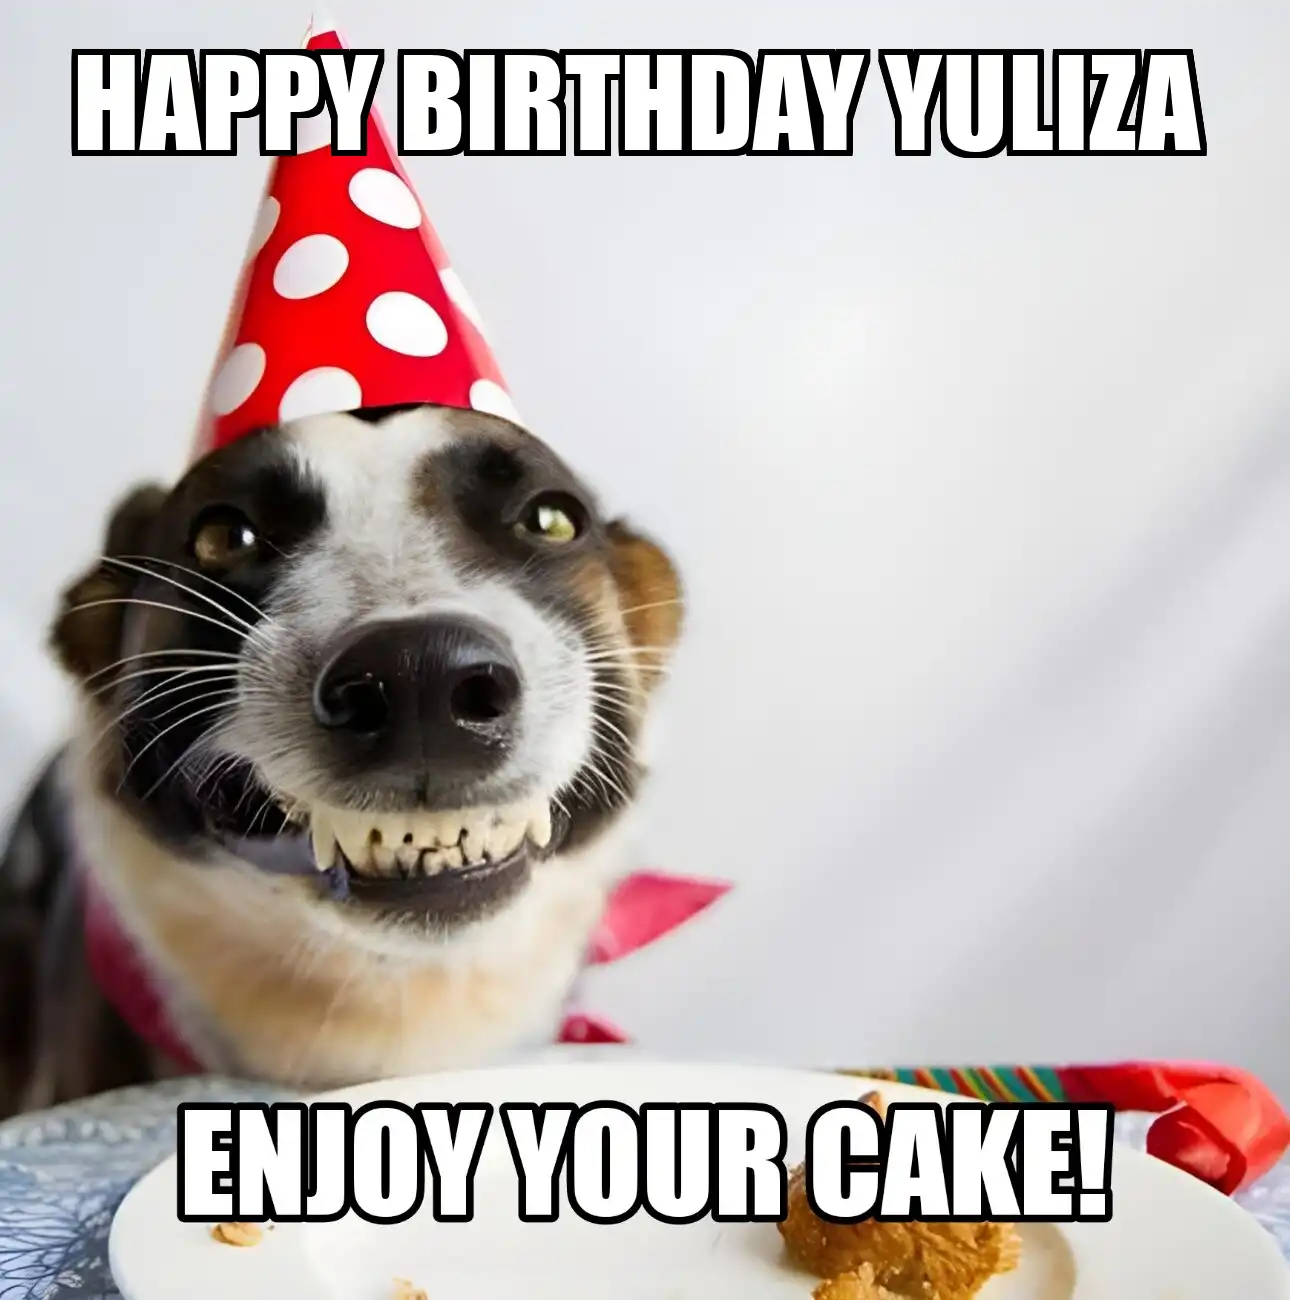 Happy Birthday Yuliza Enjoy Your Cake Dog Meme